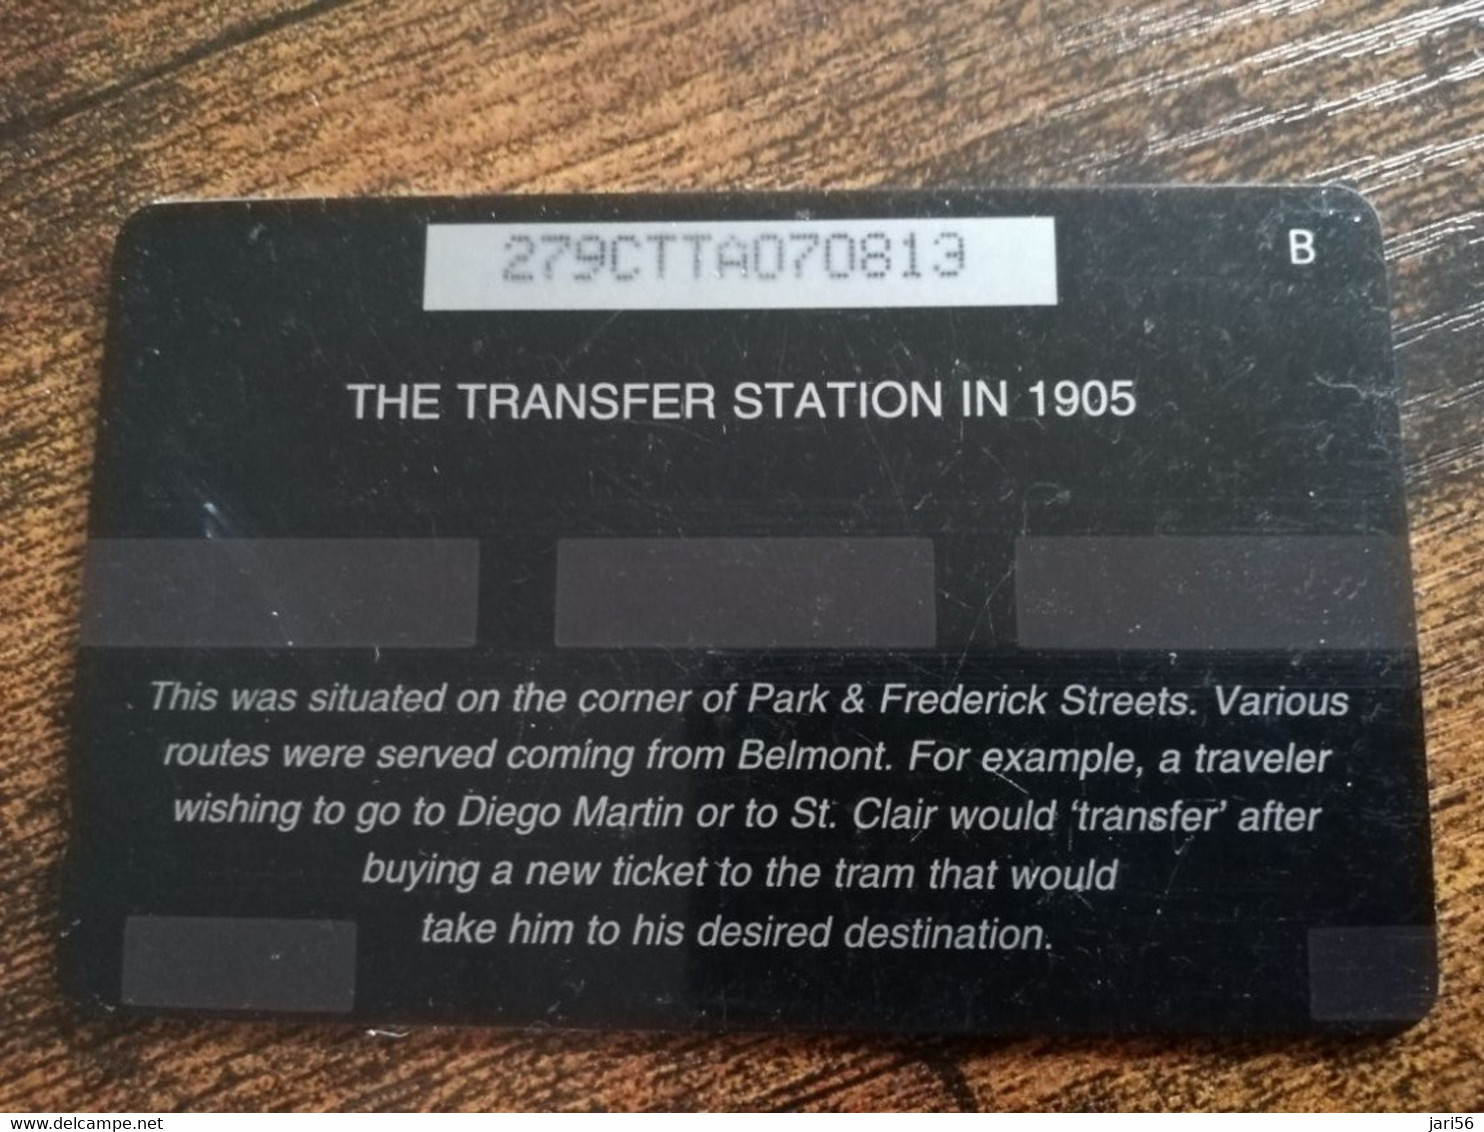 TRINIDAD & TOBAGO  GPT CARD    $20,-  279CCTA    THE TRANSFER STATION 1905              Fine Used Card        ** 8914** - Trinidad & Tobago